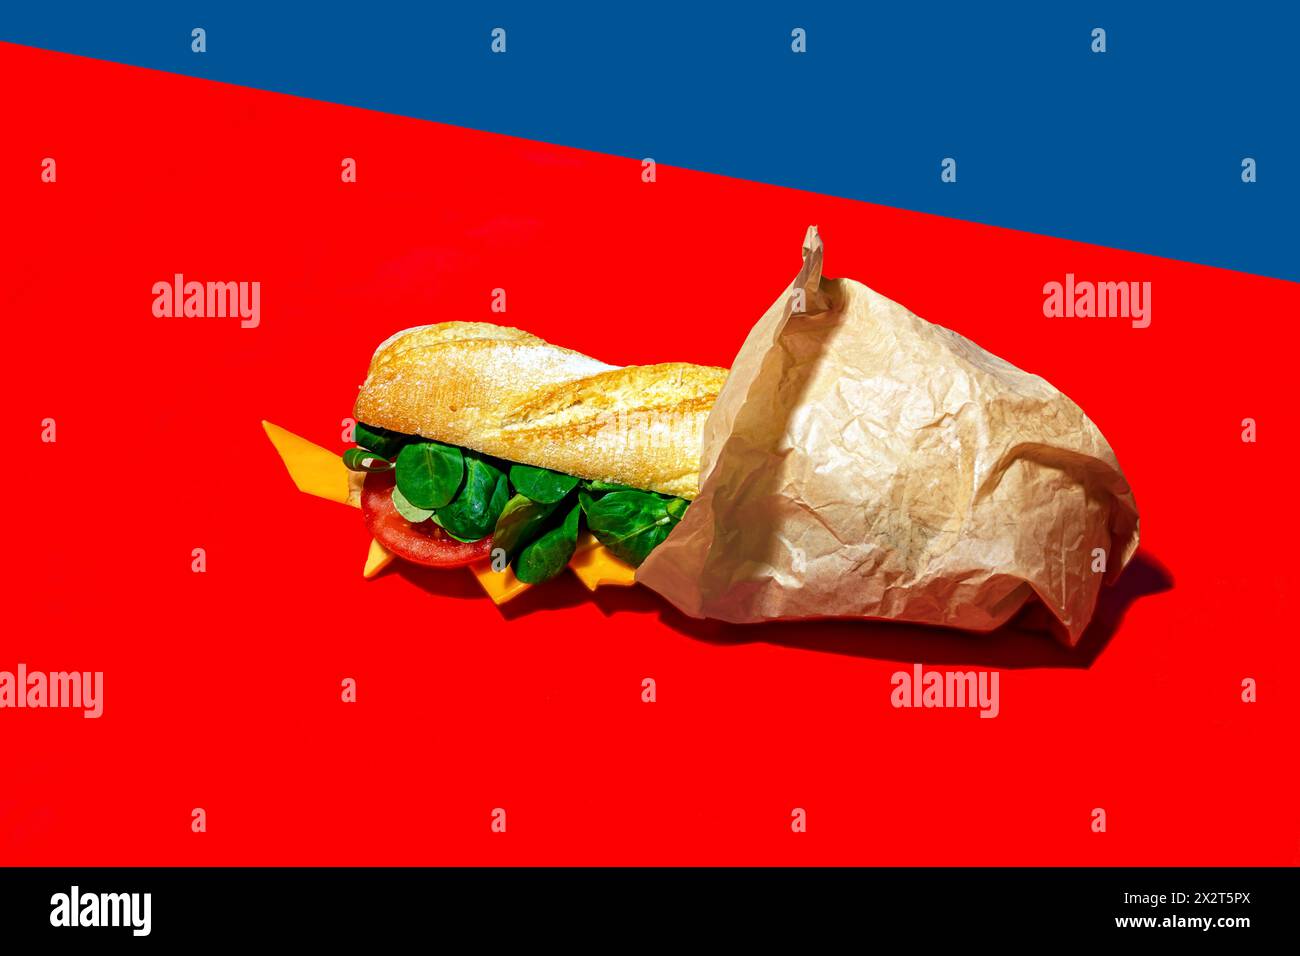 Sandwich au fromage enveloppé dans du papier sur fond rouge Banque D'Images